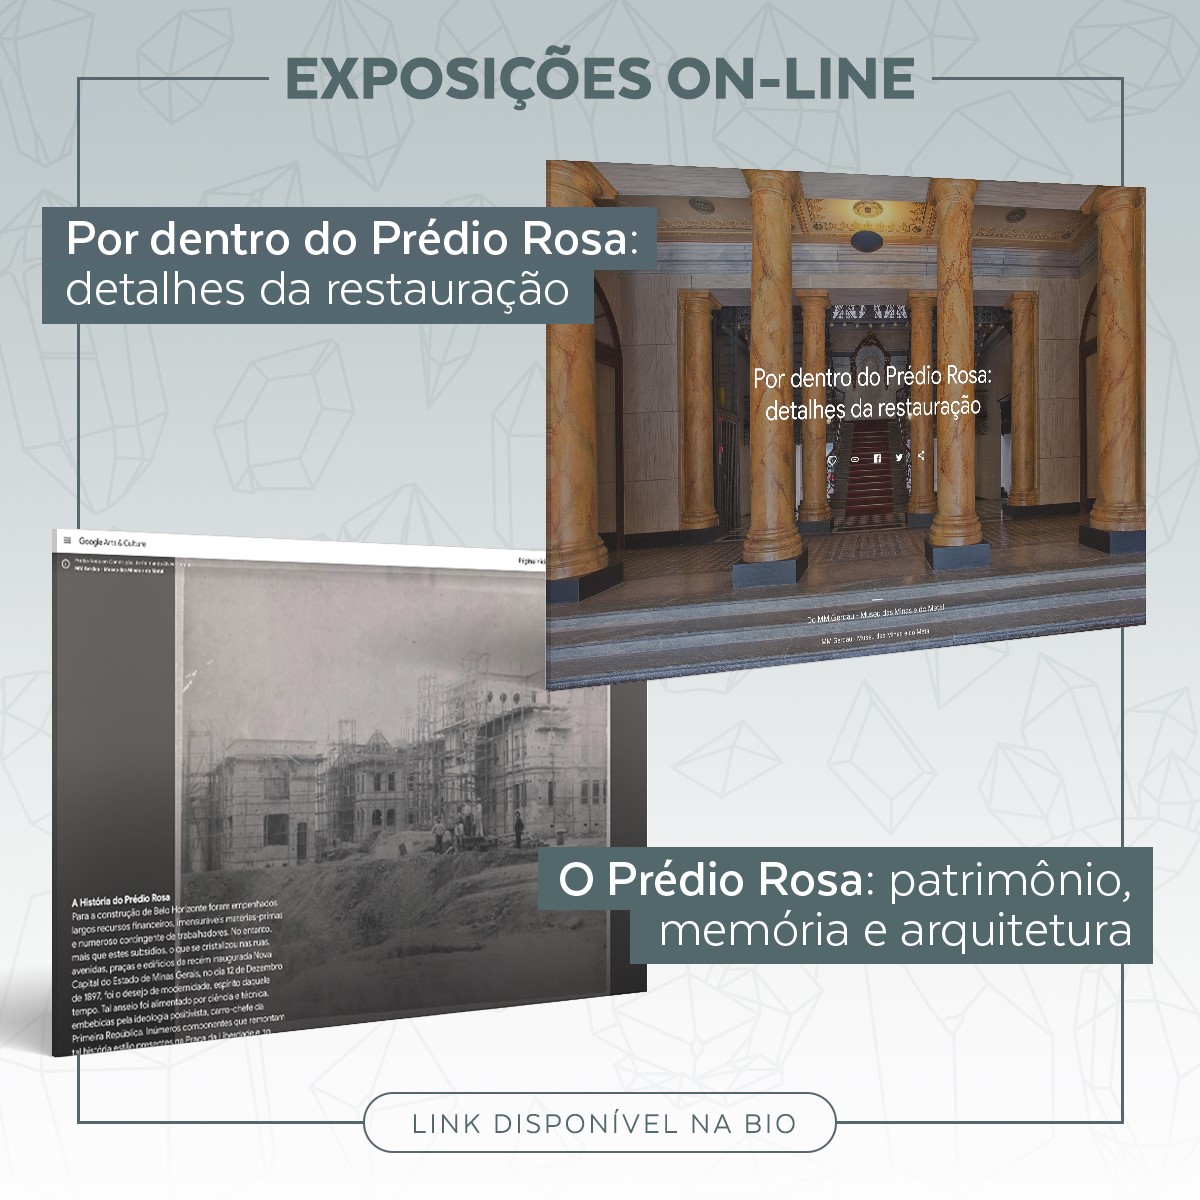 O Prédio Rosa: Patrimônio, Memória e Arquitetura — Google Arts & Culture